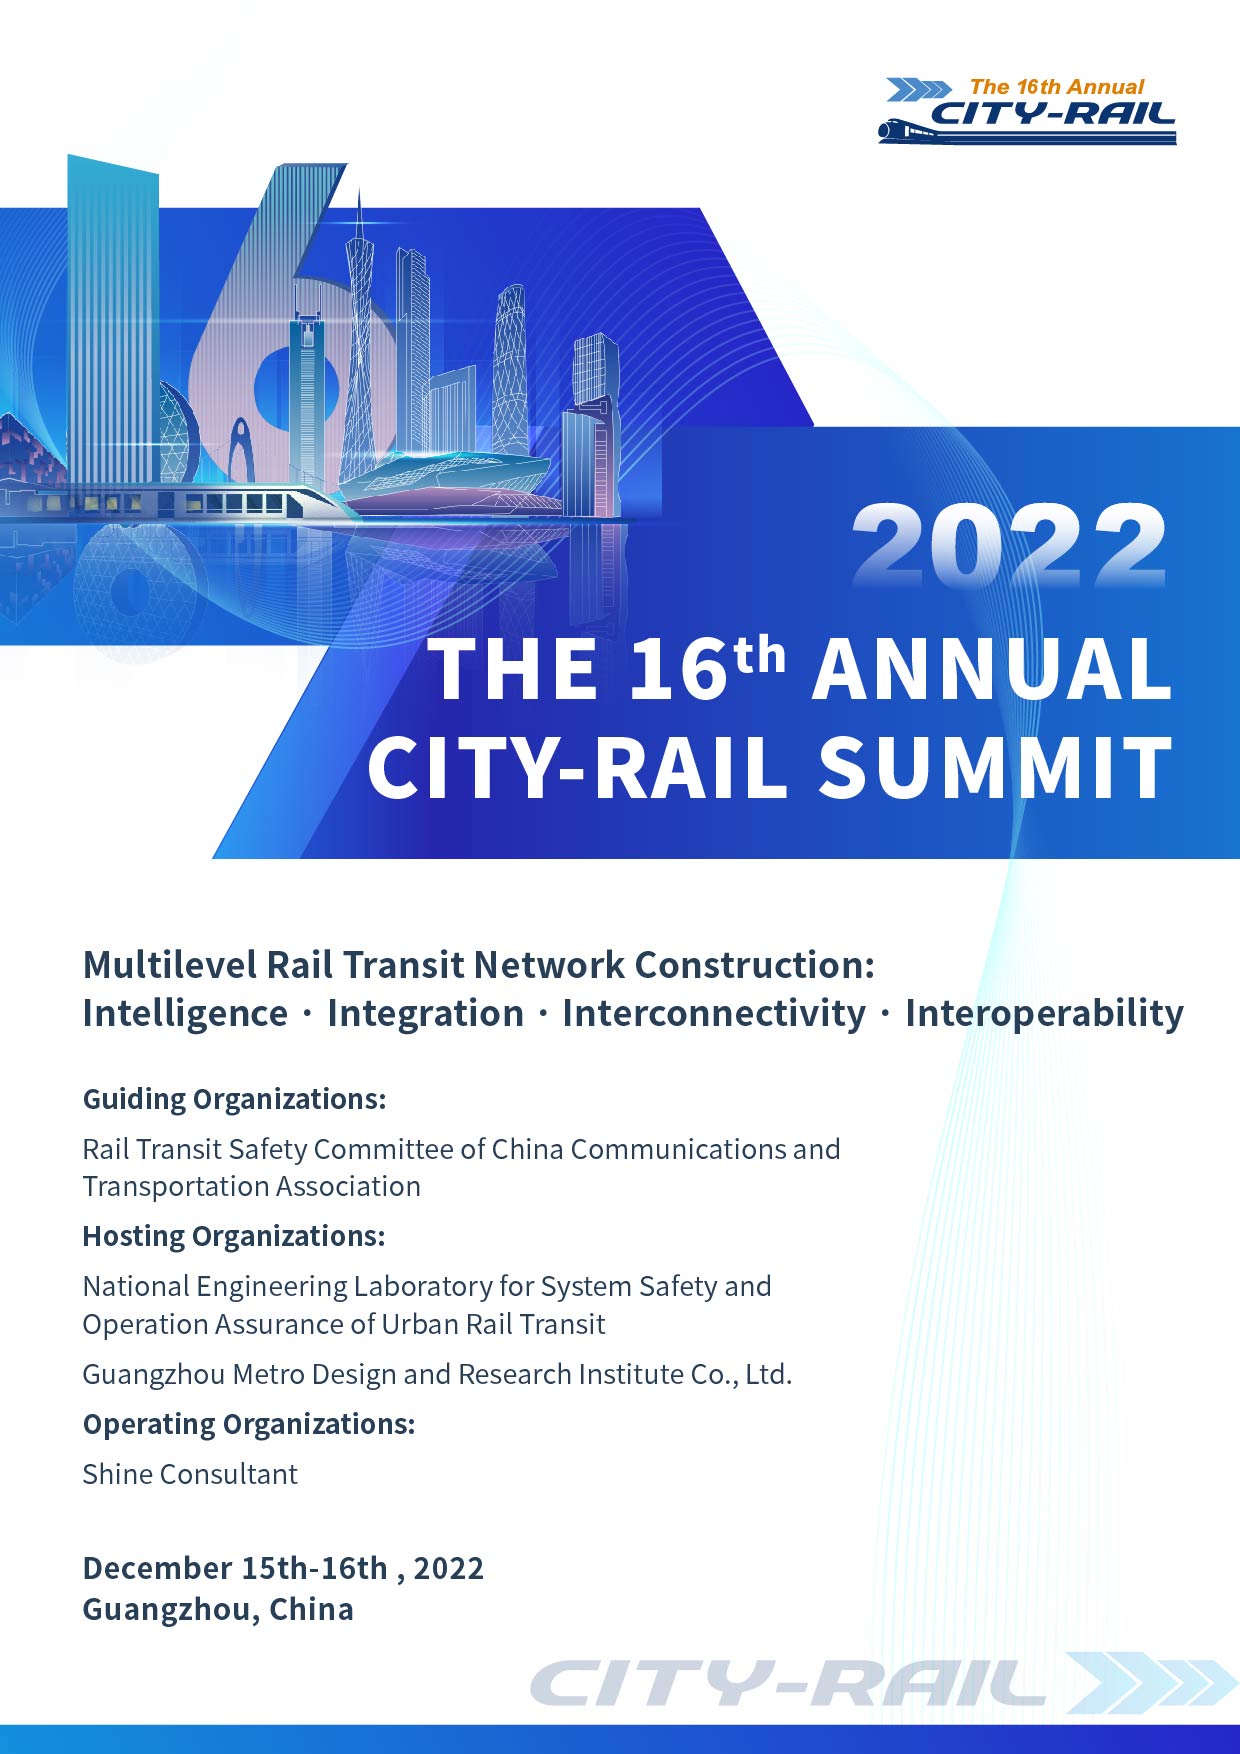 2022 THE 16th ANNUAL CITY-RAIL SUMMIT